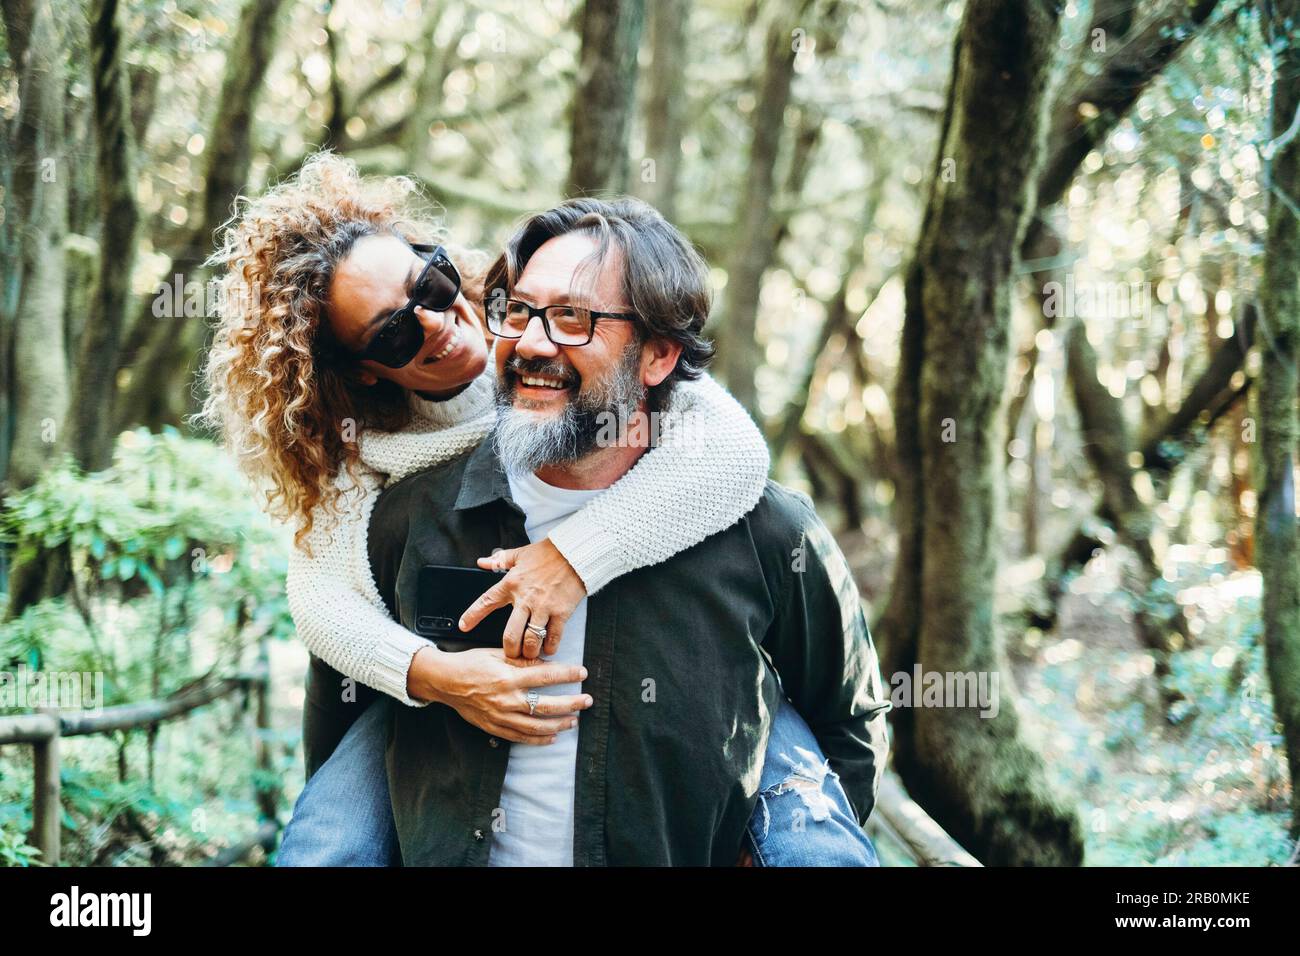 Ein glückliches Paar genießt gemeinsam Freizeitaktivitäten im Freien, trägt eine Frau im Huckepack und hat Spaß in der Beziehung. Freude Leute haben Spaß in der Natur Wald Wochenendreiseziel Stockfoto